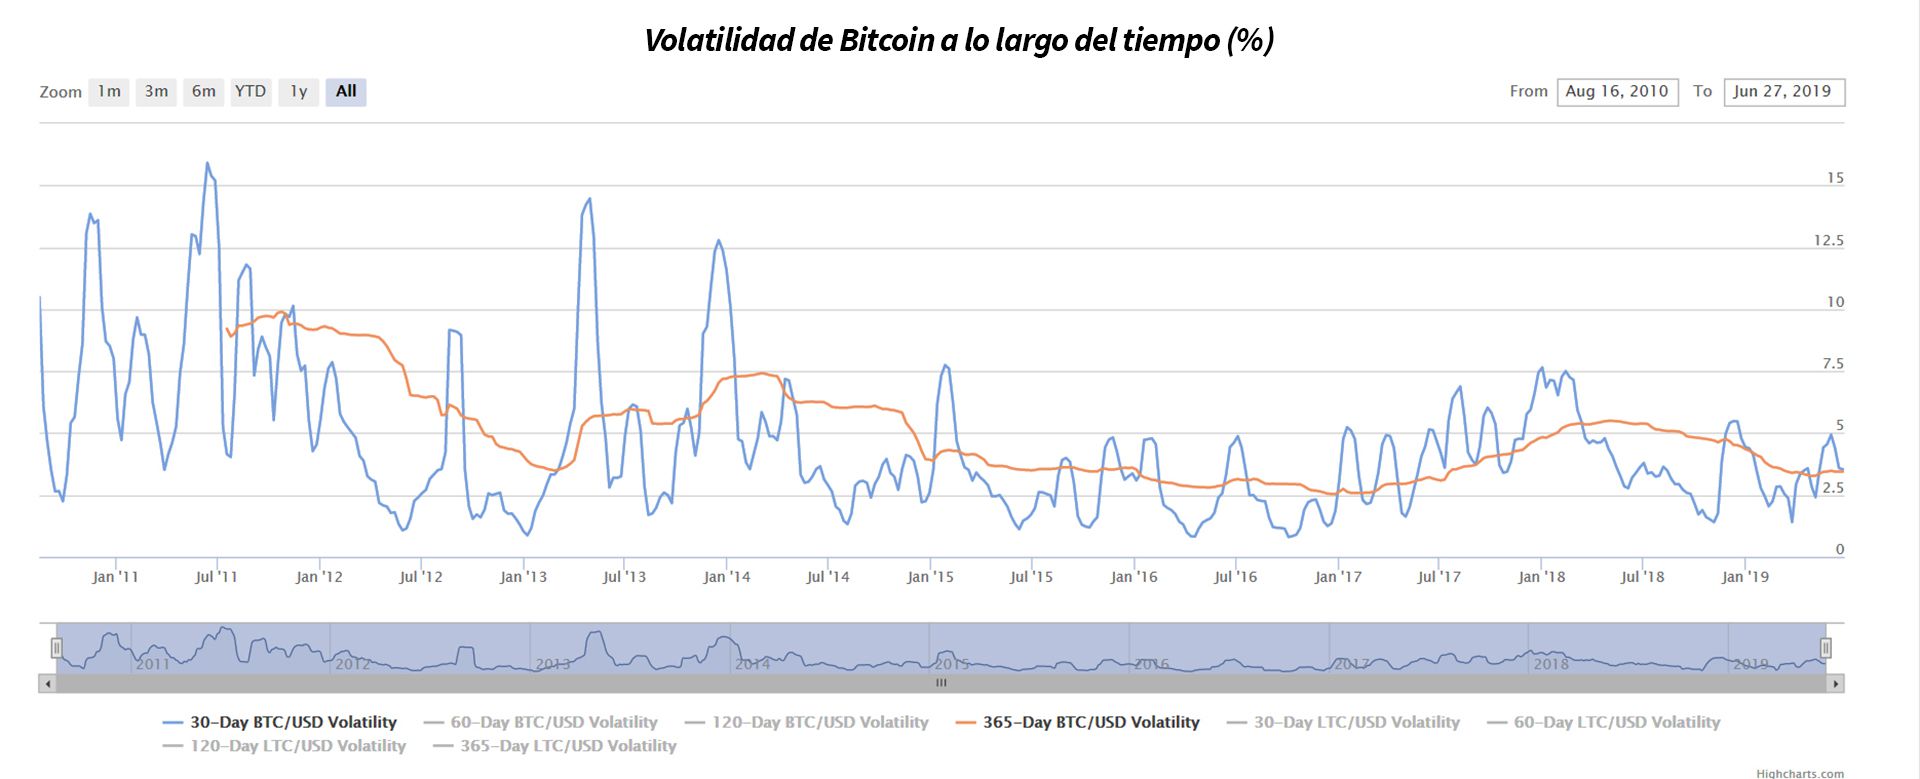 Gráfico cronológico de la volatilidad del Bitcoin desde su génesis hasta el presente